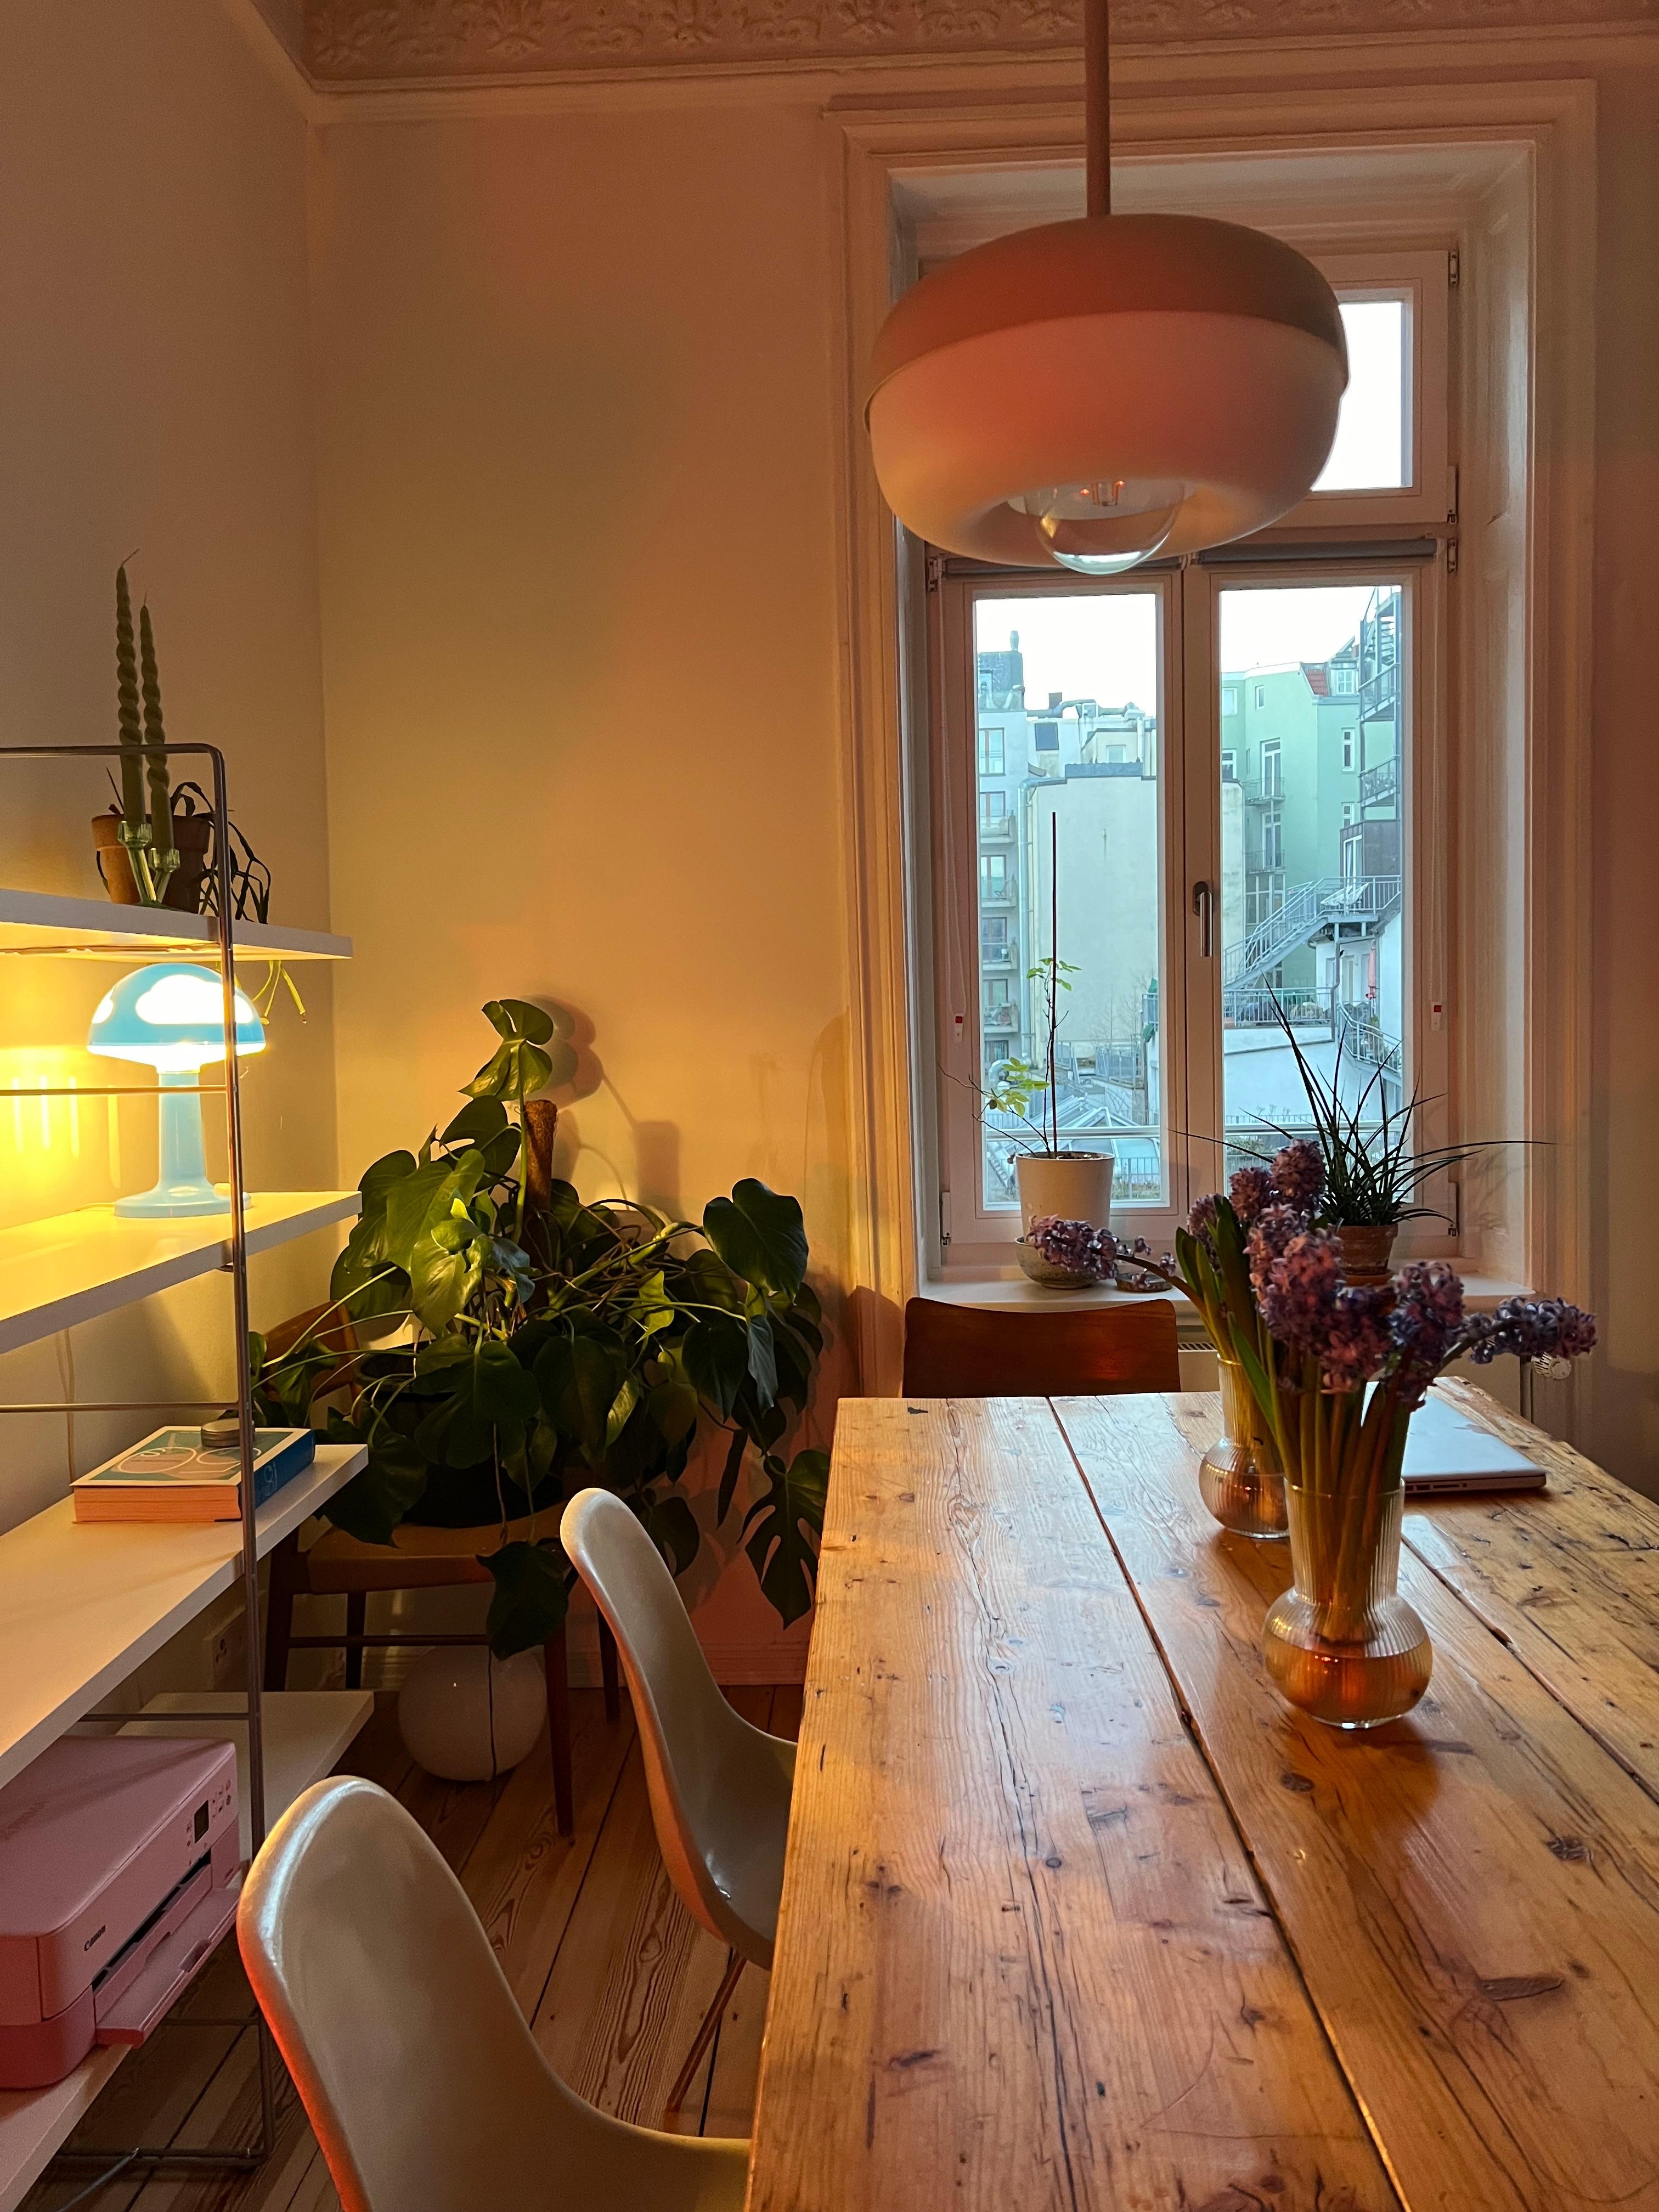 Diningstation 💛

#esszimmer #interior #wohnen #leben #living #homedecor #interiorinspo